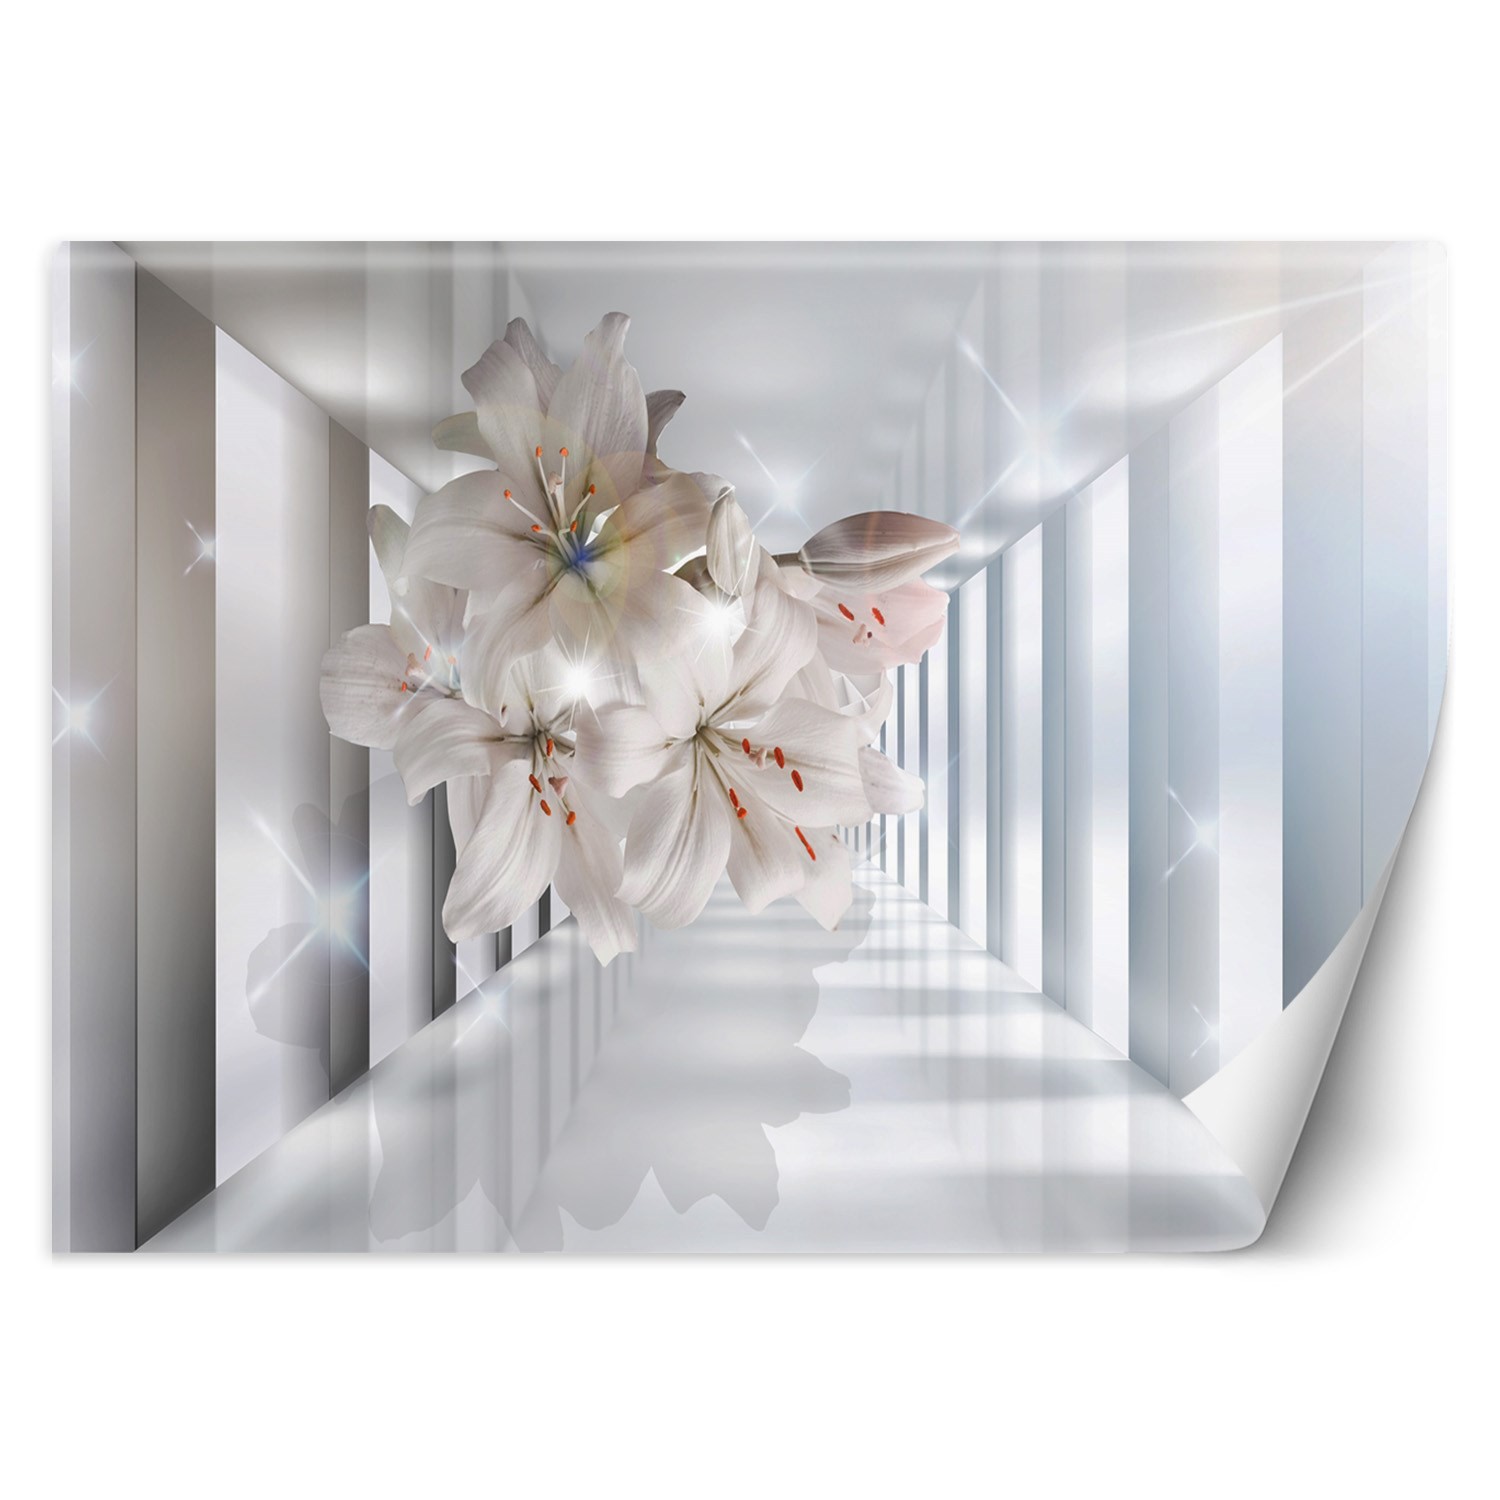 Trend24 – Behang – Bloemen In De Corridor 3D – Behangpapier – Fotobehang 3D – Behang Woonkamer – 200x140x2 cm – Incl. behanglijm